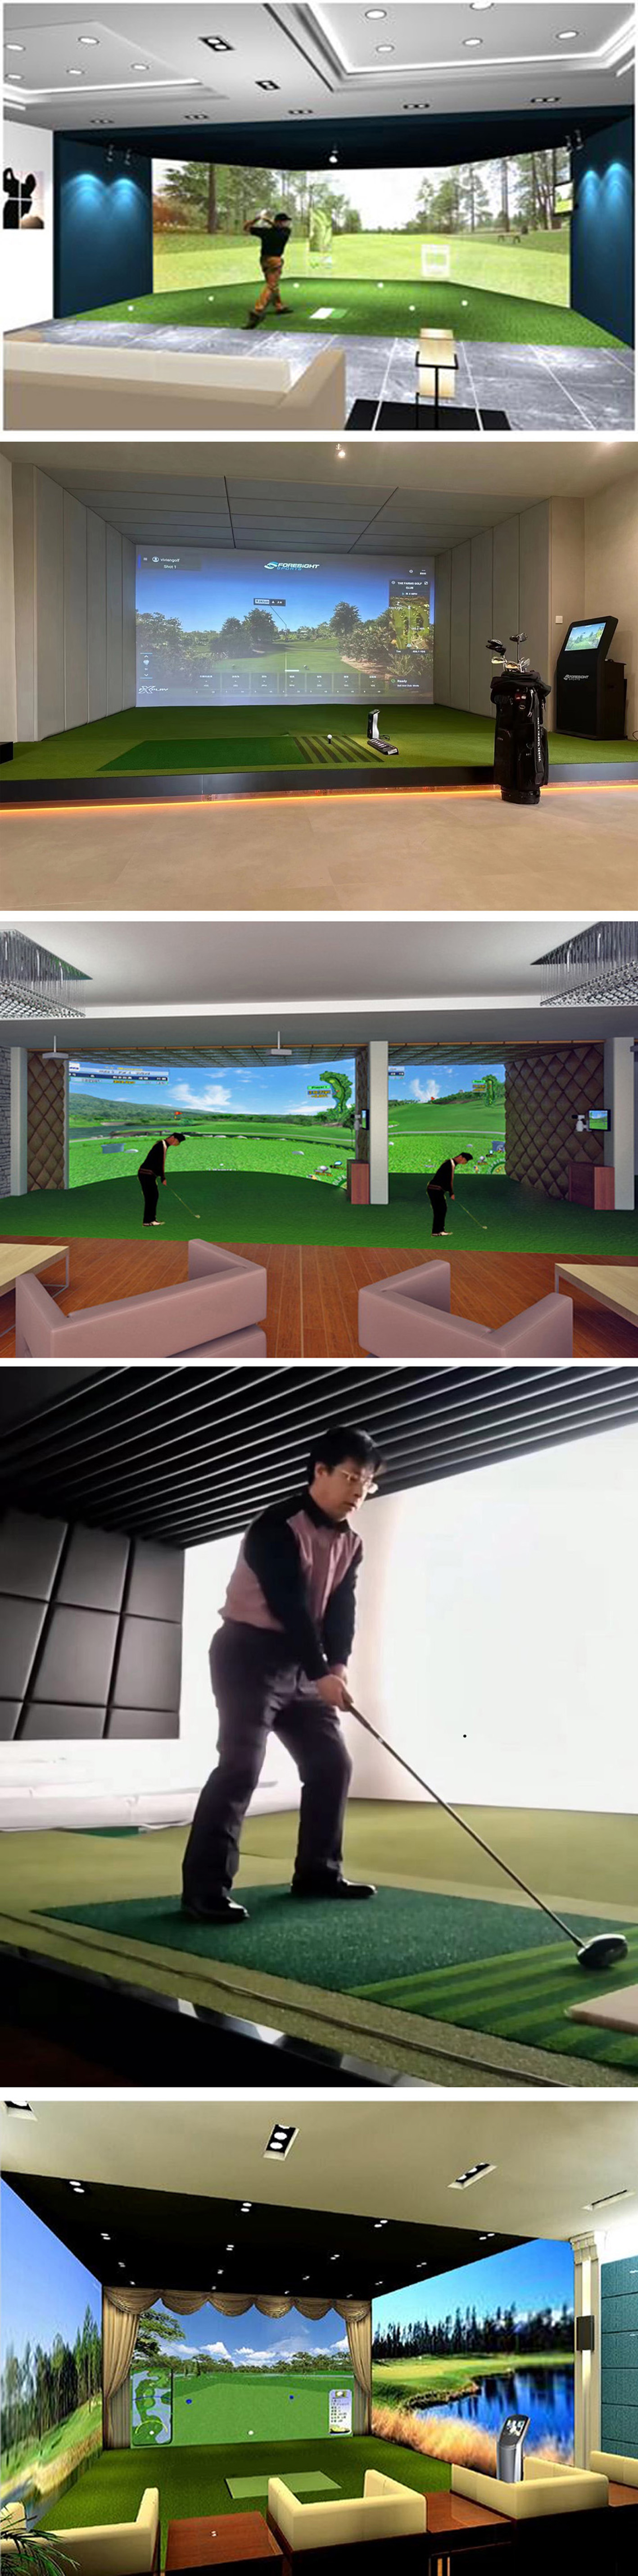 高尔夫室内模拟 设备软件 4.jpg